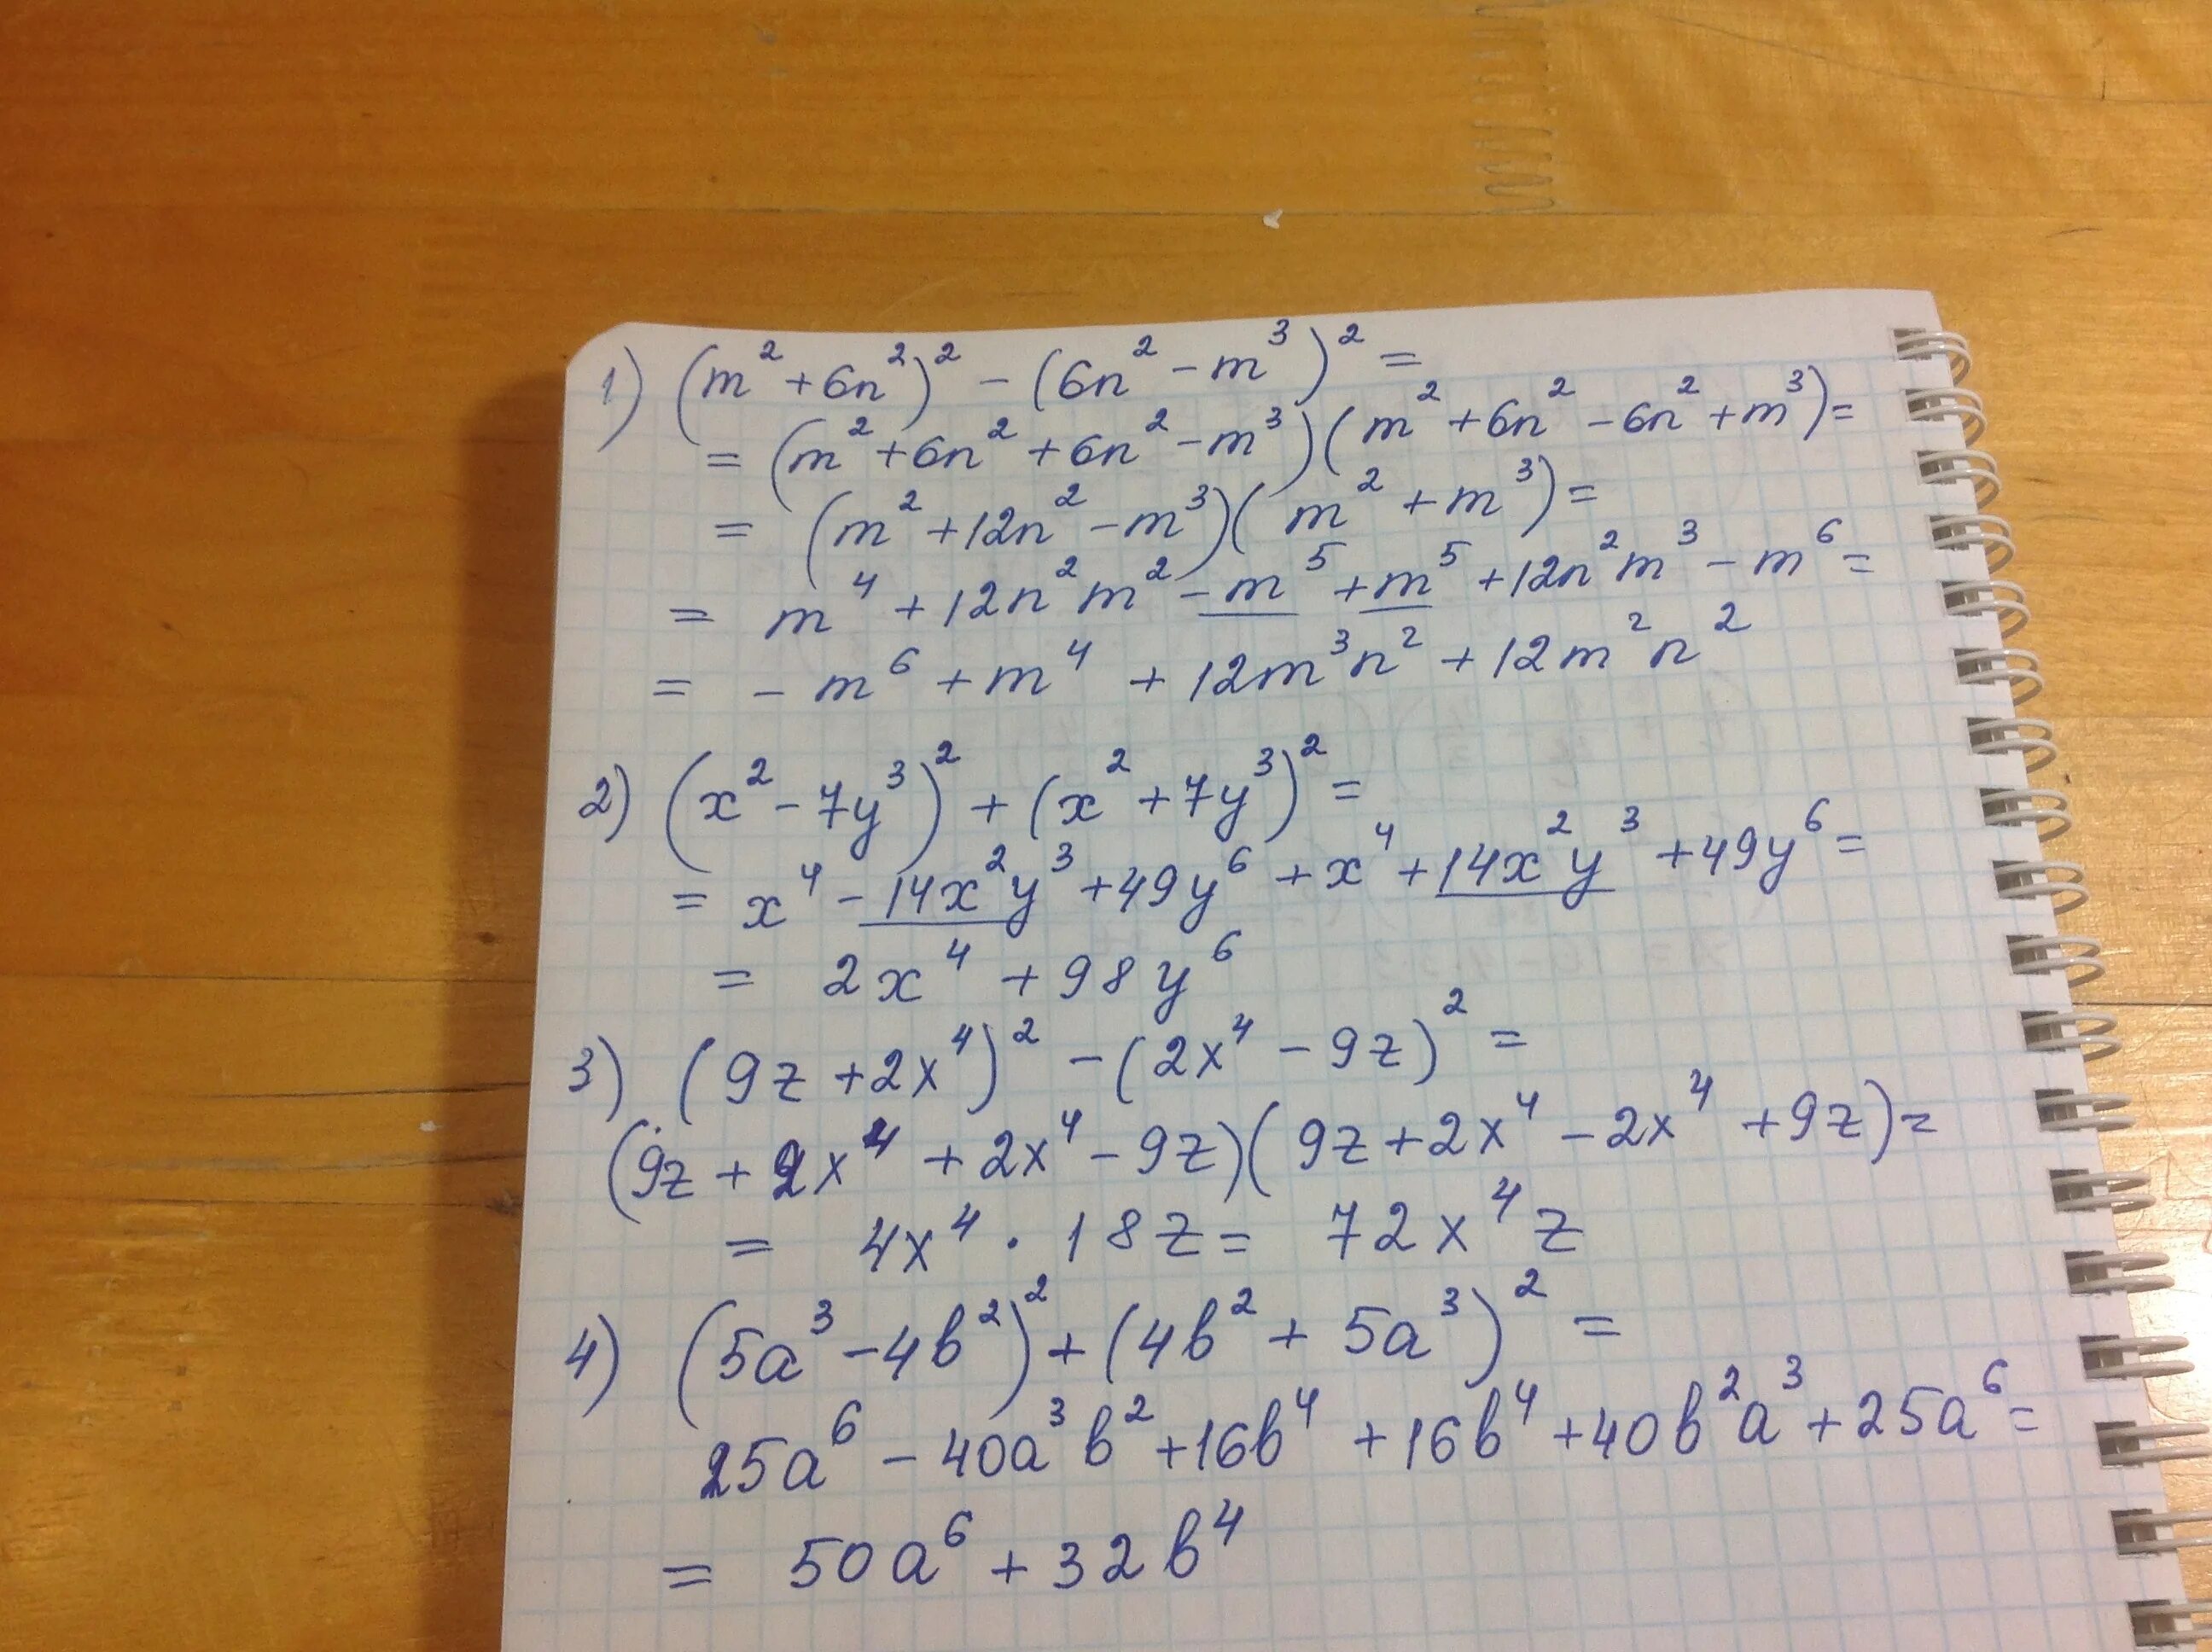 Упростить выражение 4x y 5 3. (M+2)2 - (3m + 3)2 = 0. Упростите выражение 1 m n 1 m n 2 3m 3n. (0-3)^2+(5-2)^2. (3x+1)^2+(x-7)^2.